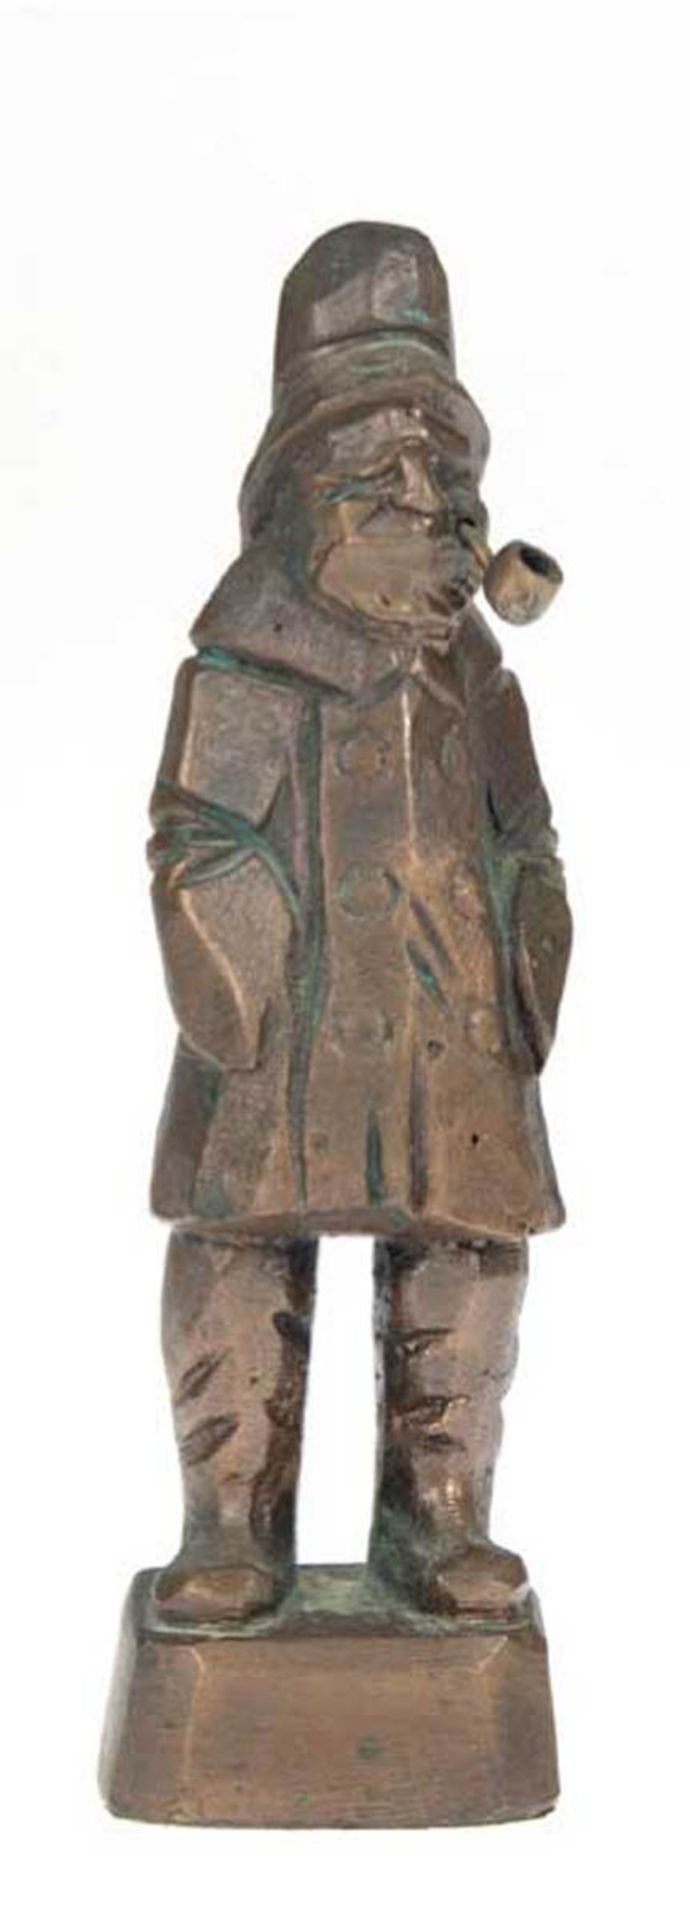 Bronzefigur "Seemann mit Pfeife", braun patiniert, H. 19 cm